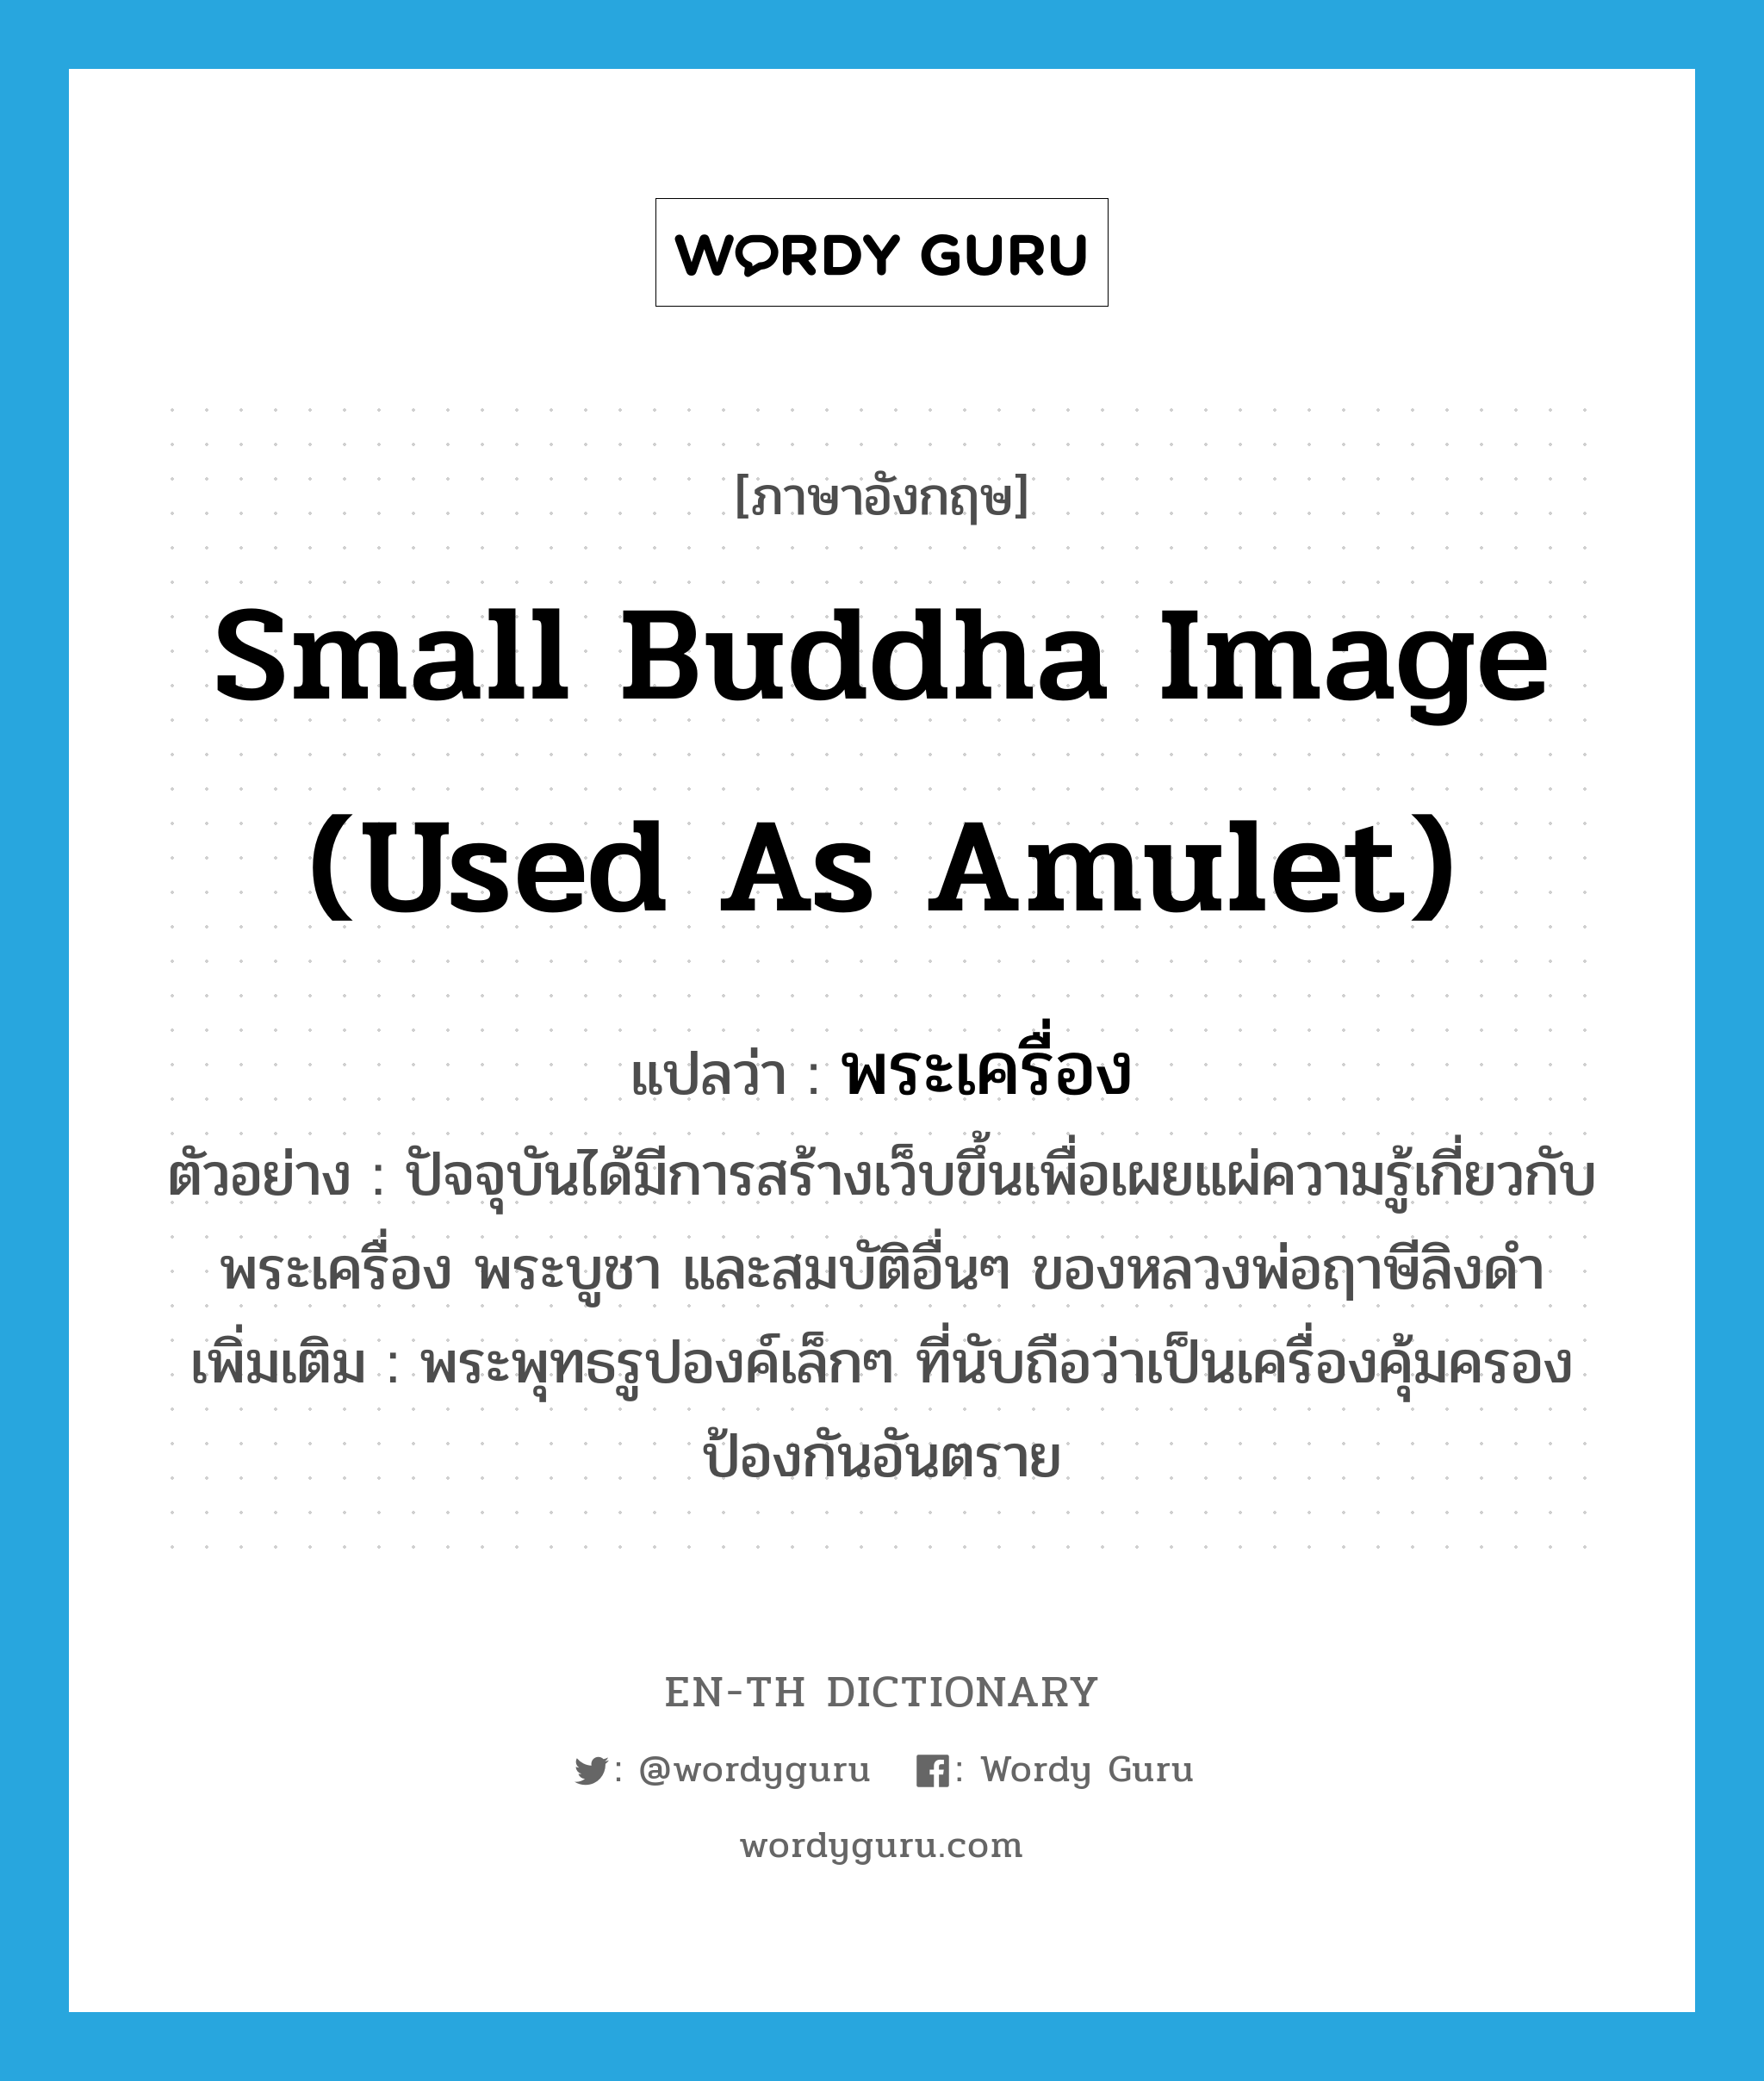 small Buddha image (used as amulet) แปลว่า?, คำศัพท์ภาษาอังกฤษ small Buddha image (used as amulet) แปลว่า พระเครื่อง ประเภท N ตัวอย่าง ปัจจุบันได้มีการสร้างเว็บขึ้นเพื่อเผยแผ่ความรู้เกี่ยวกับ พระเครื่อง พระบูชา และสมบัติอื่นๆ ของหลวงพ่อฤาษีลิงดำ เพิ่มเติม พระพุทธรูปองค์เล็กๆ ที่นับถือว่าเป็นเครื่องคุ้มครองป้องกันอันตราย หมวด N